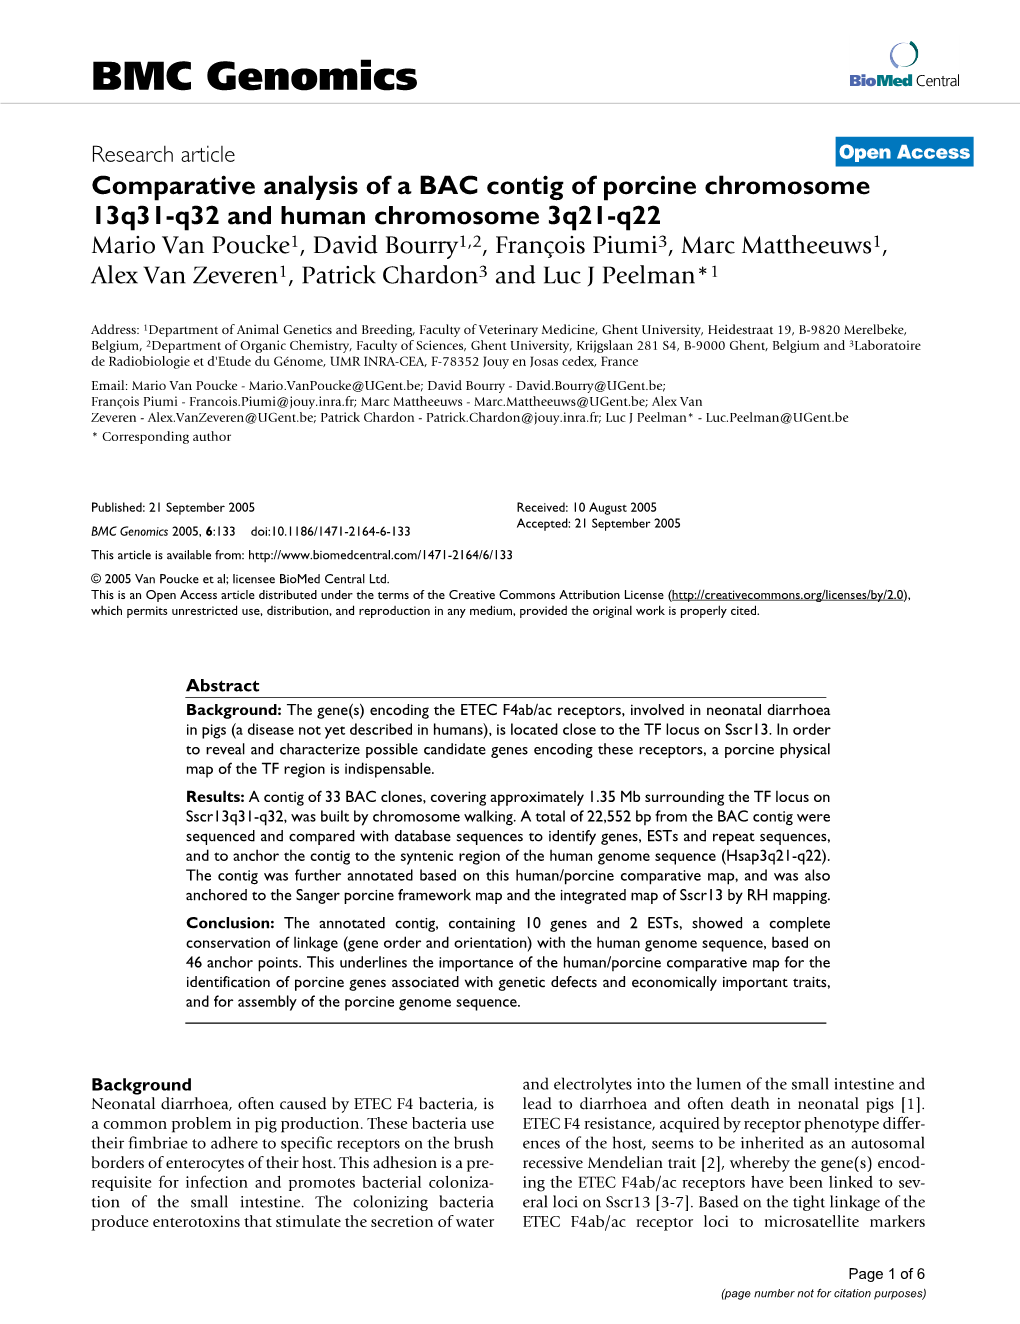 Comparative Analysis of a BAC Contig of Porcine Chromosome 13Q31-Q32